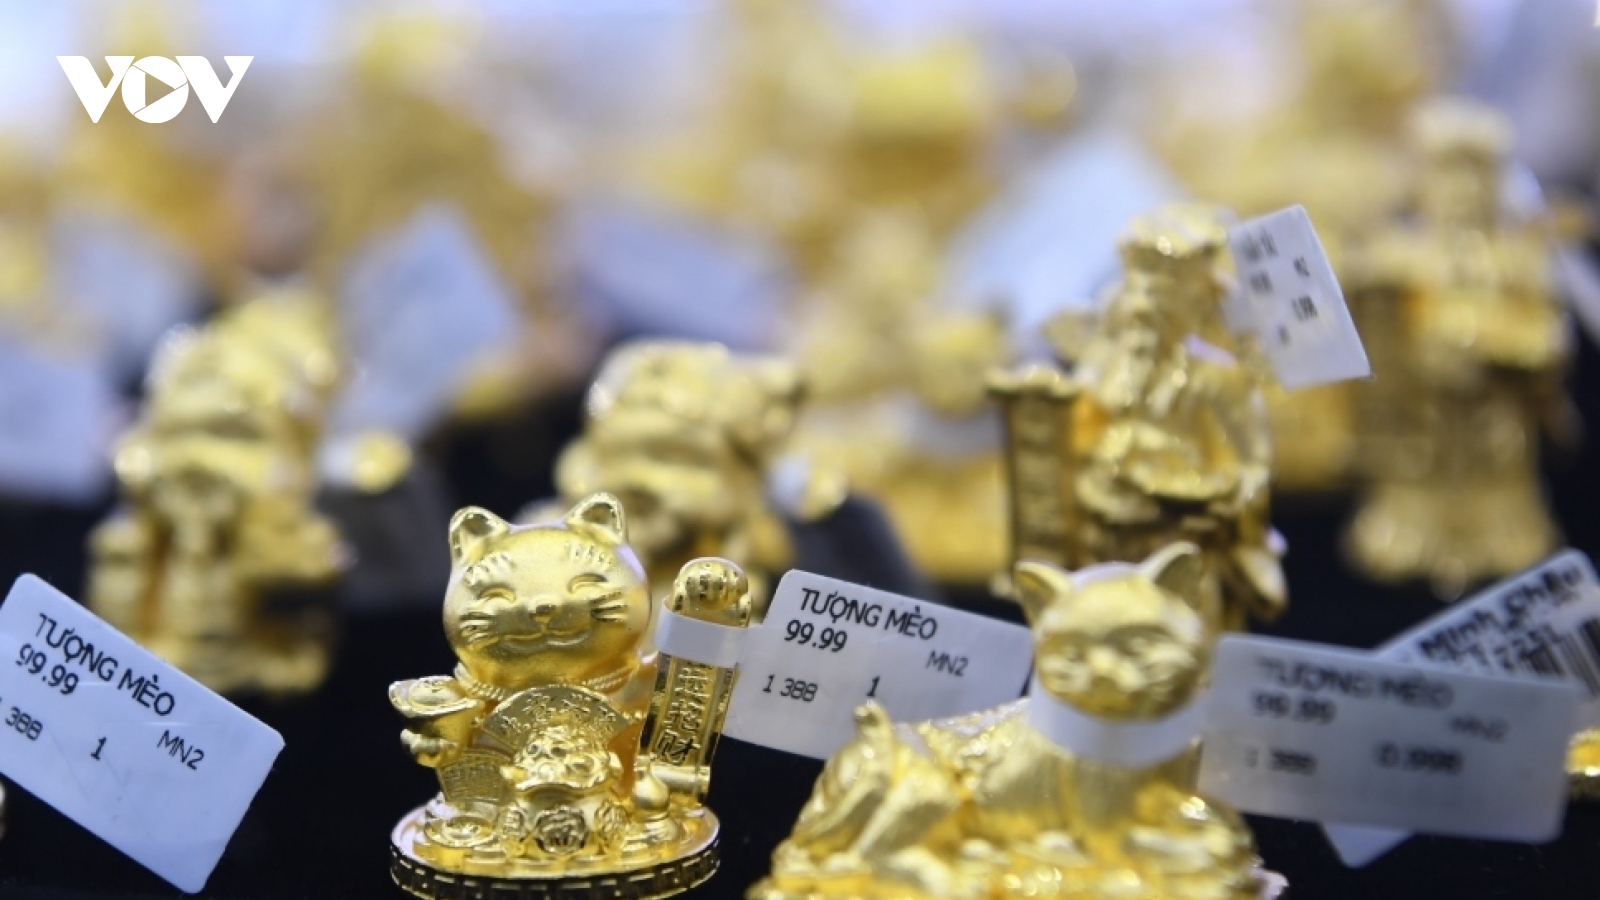 Giá vàng hôm nay 25/8: Vàng SJC giảm về mức 67,85 triệu đồng/lượng